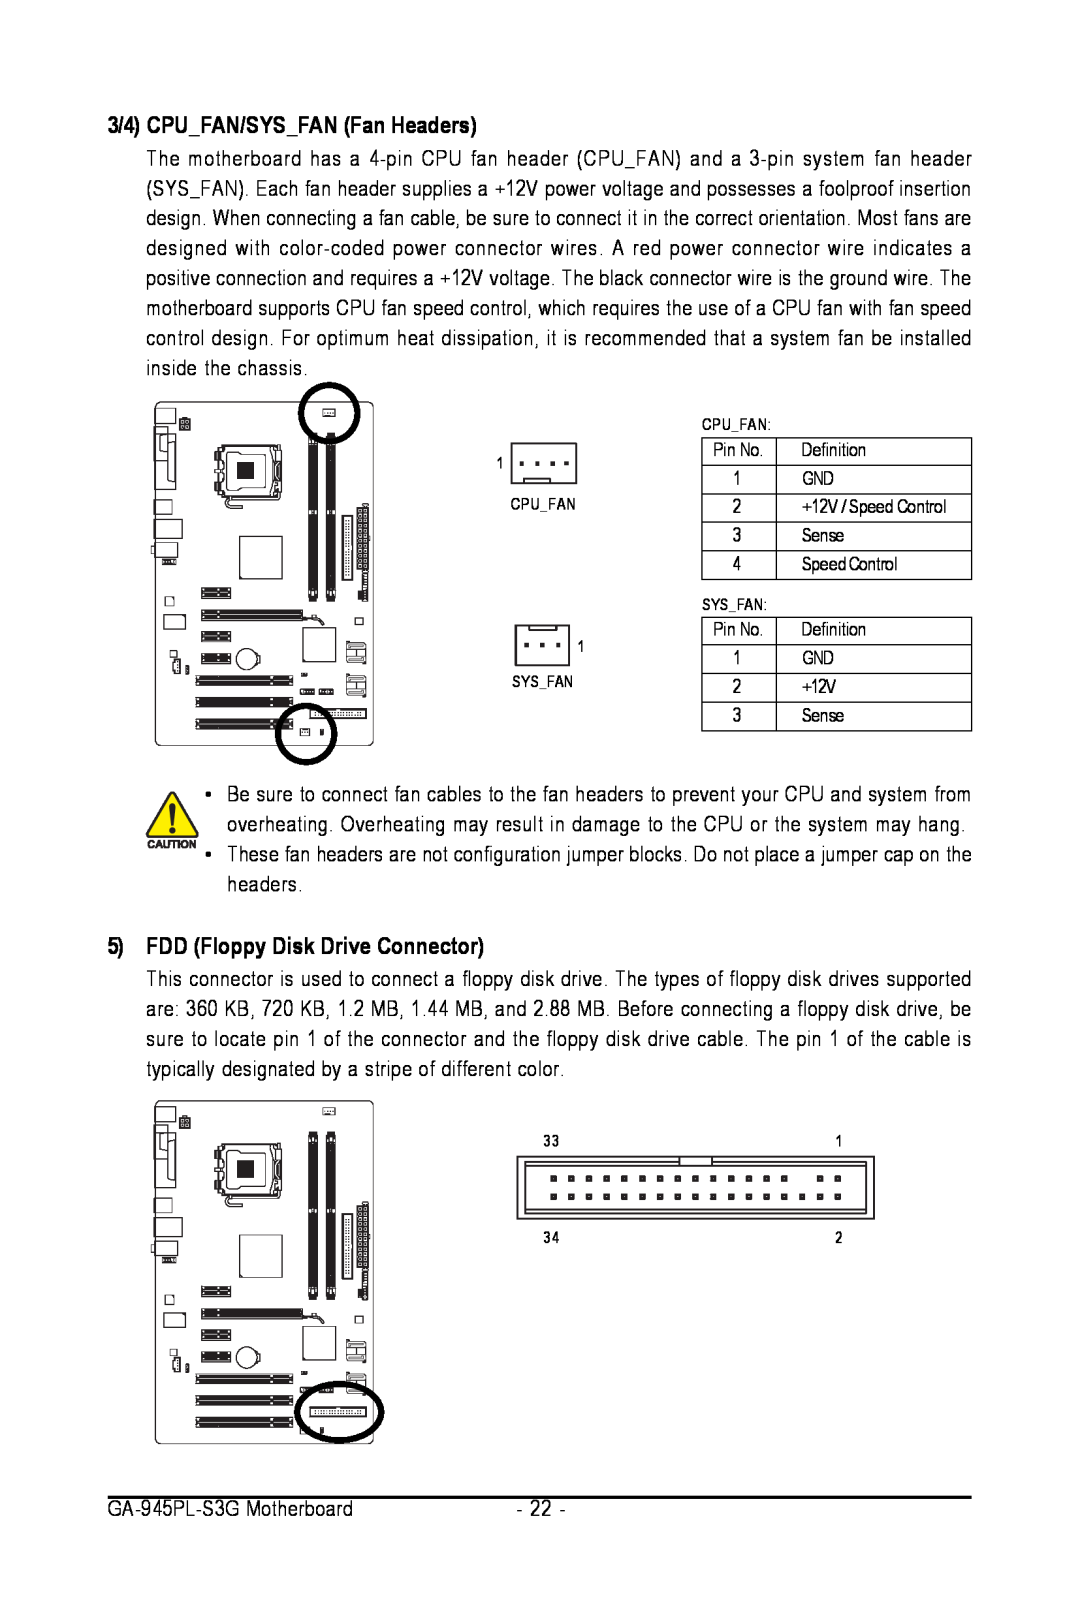 Intel user manual 3/4 CPU FAN/SYS FAN Fan Headers, 5FDD Floppy Disk Drive Connector, GA-945PL-S3GMotherboard 